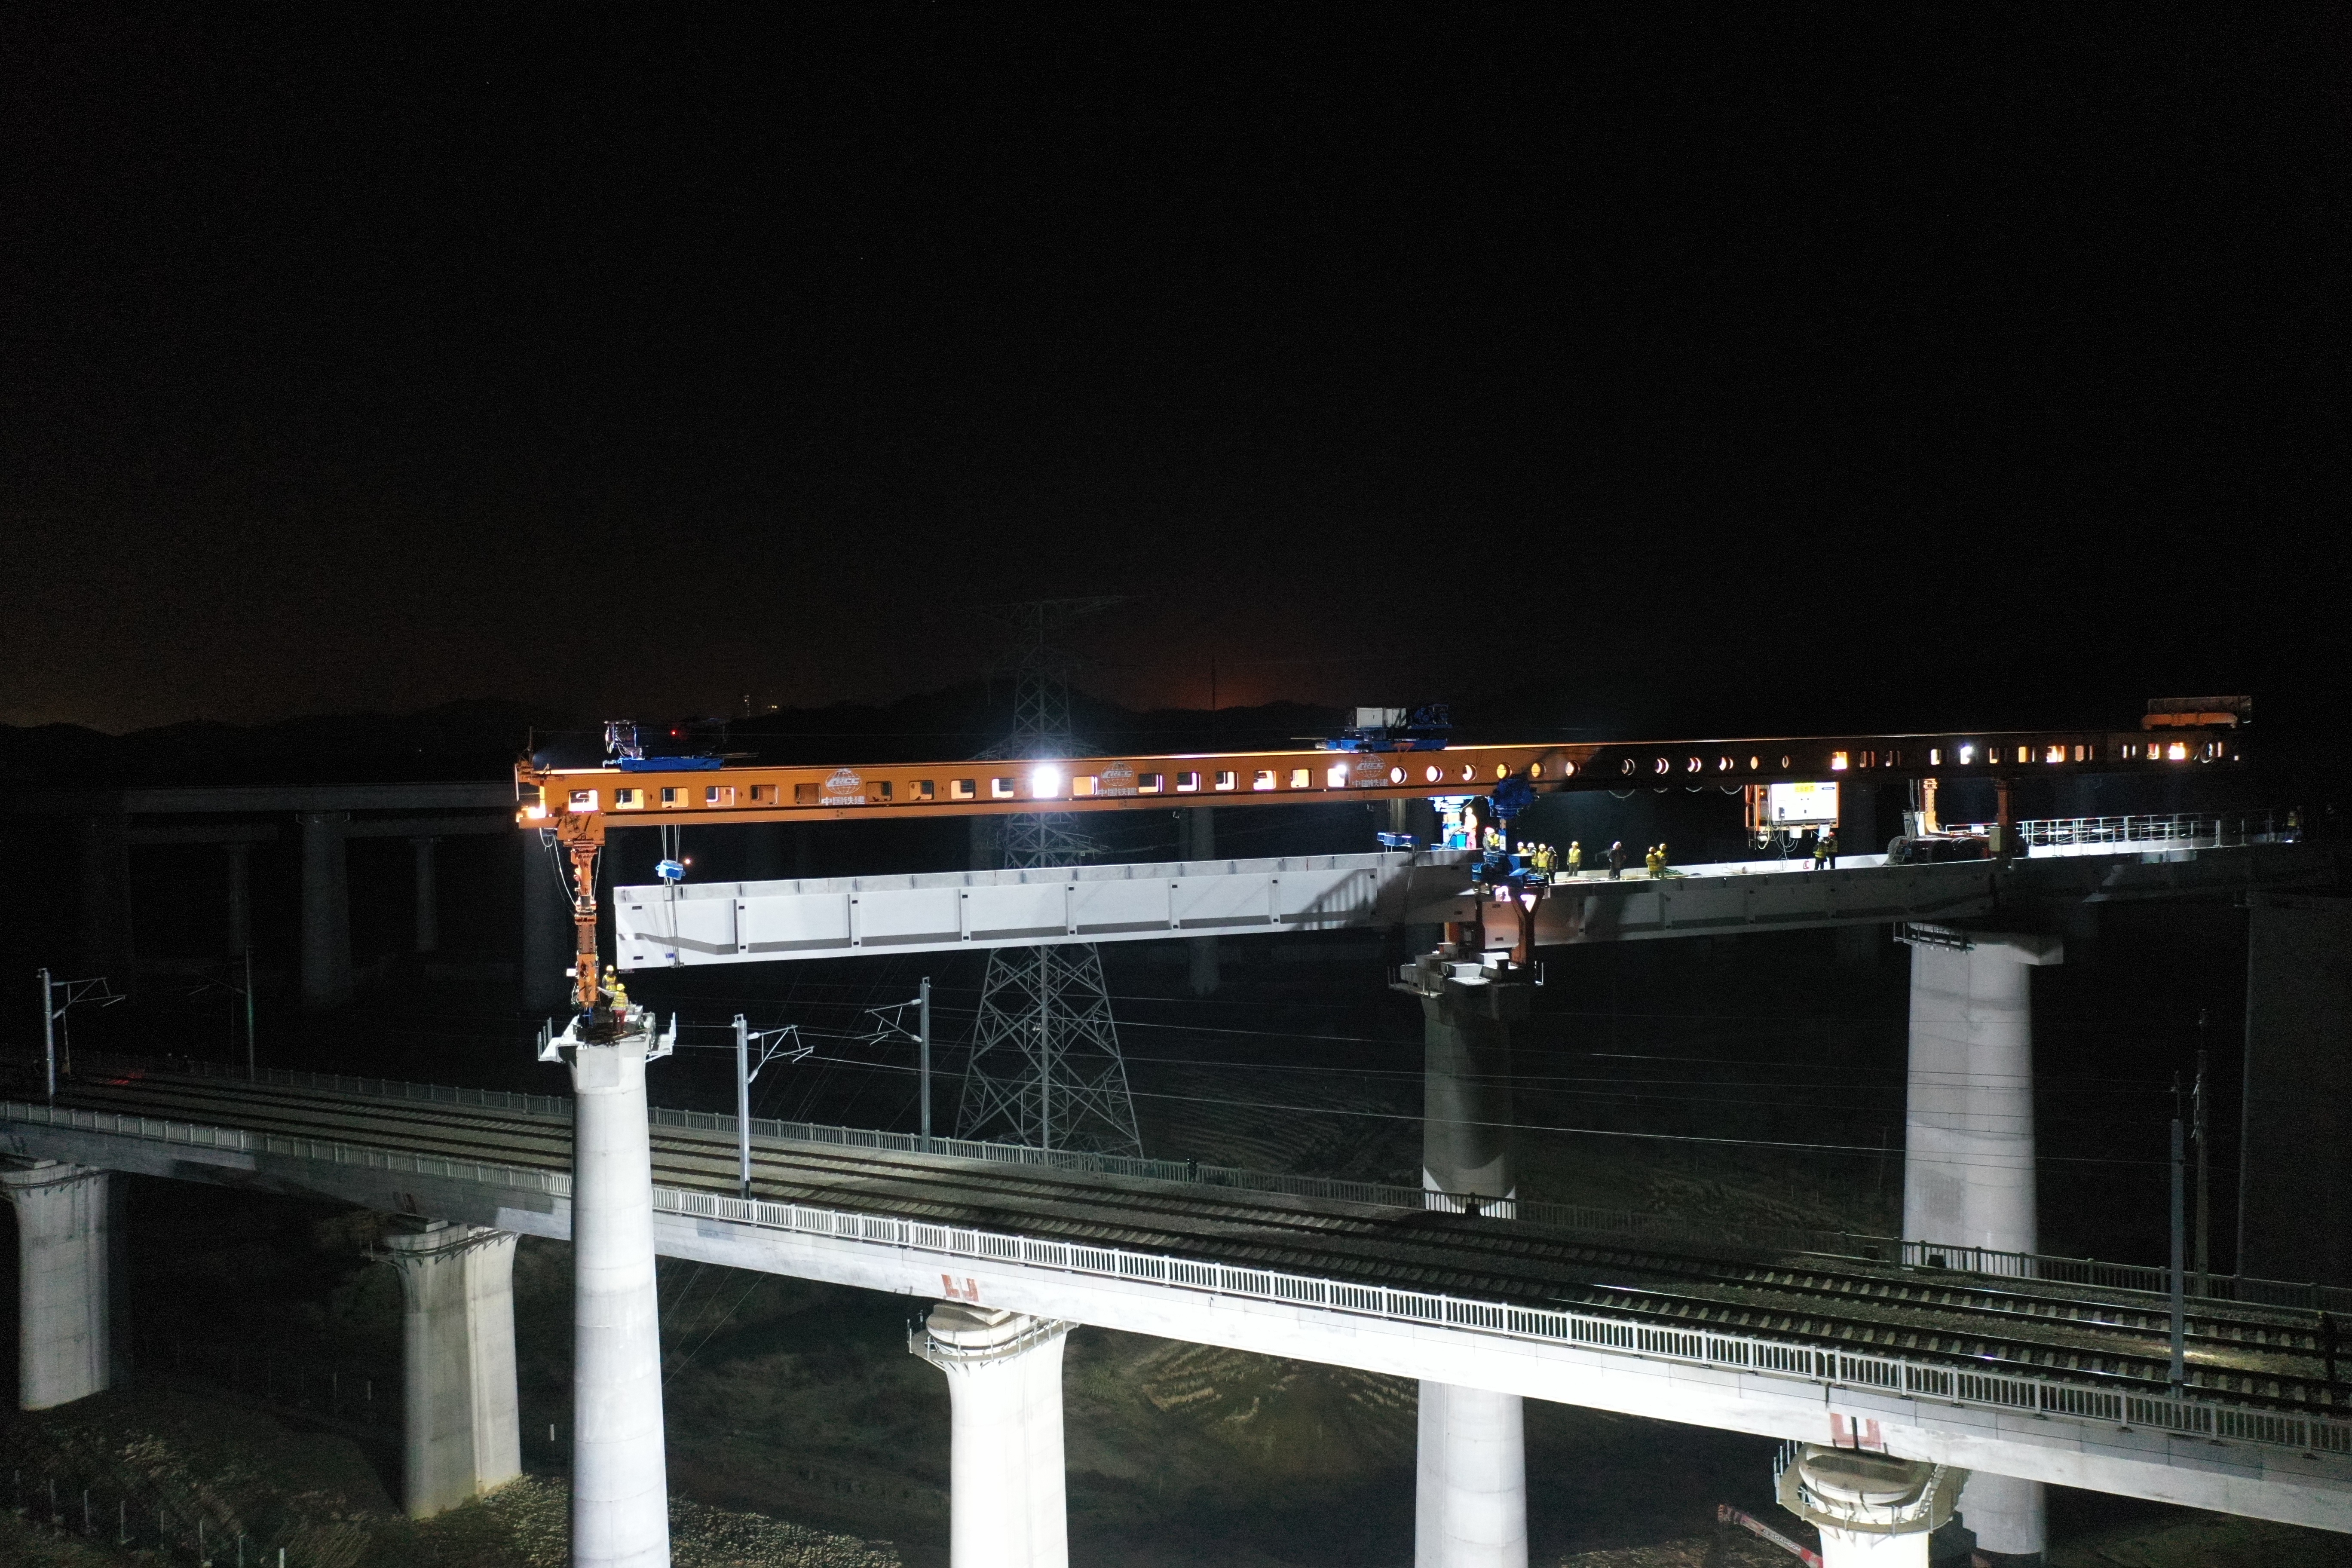 常益长铁路至长株潭城铁下行联络线特大桥T梁架设施工现场。